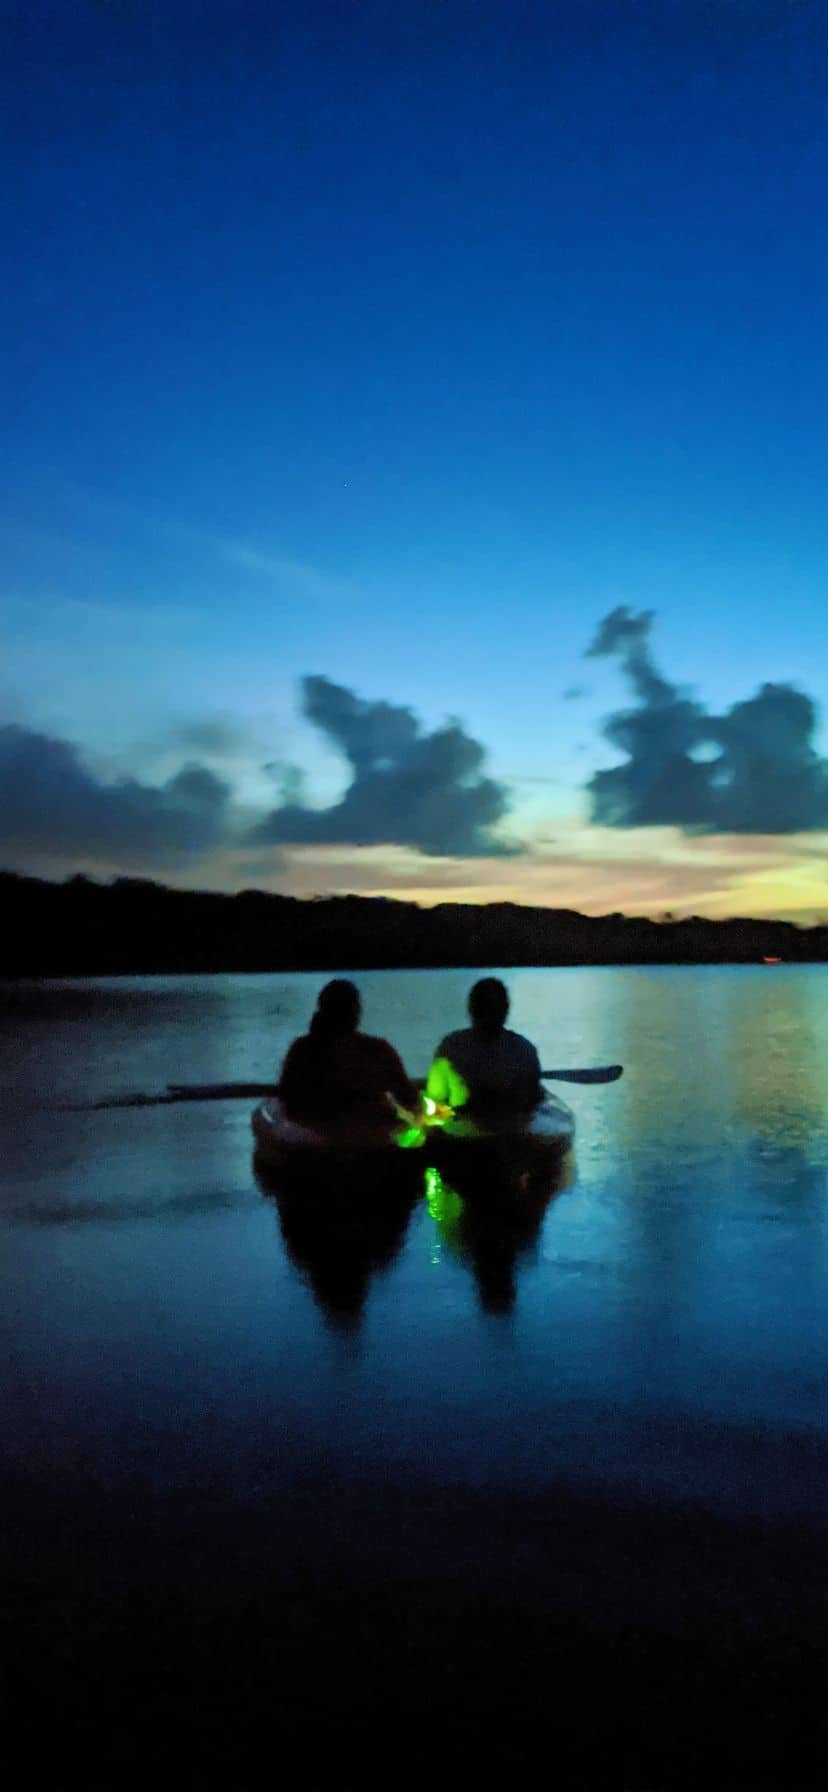 Sunset Bioluminescent Kayaking in Florida, near Cocoa Beach